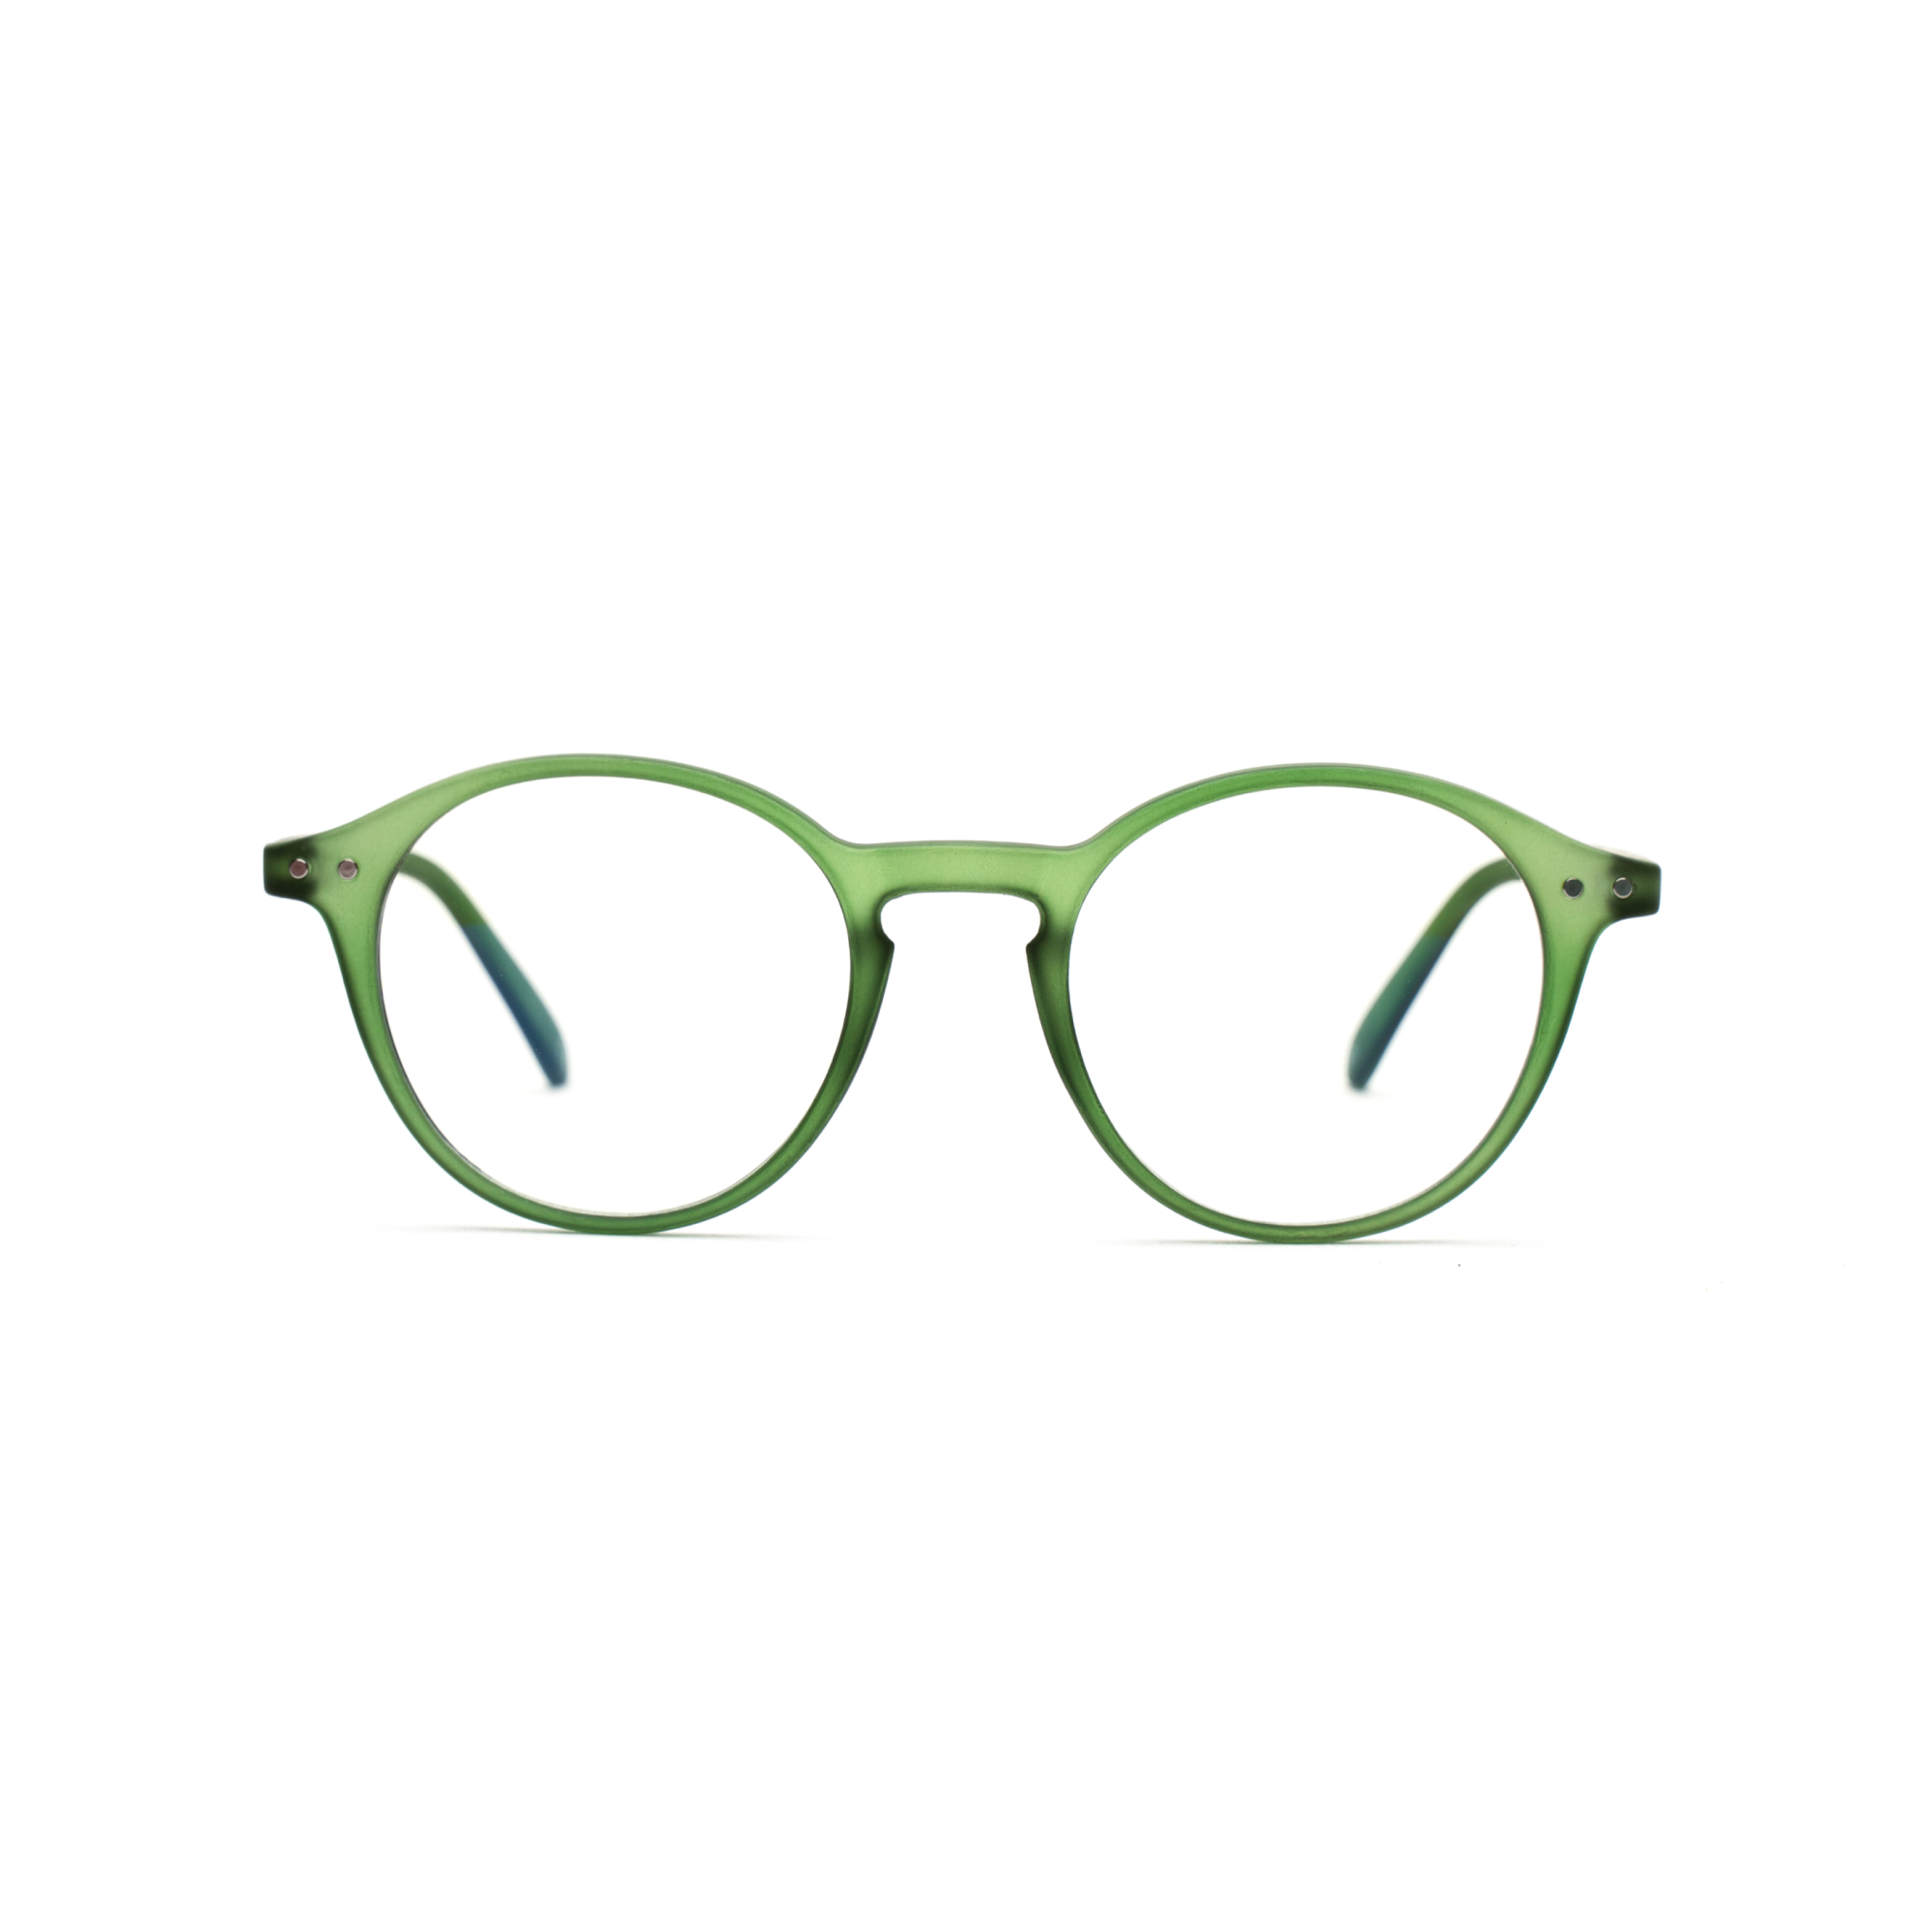 Men's blue light reading glasses – Luca BlueVision m - Green